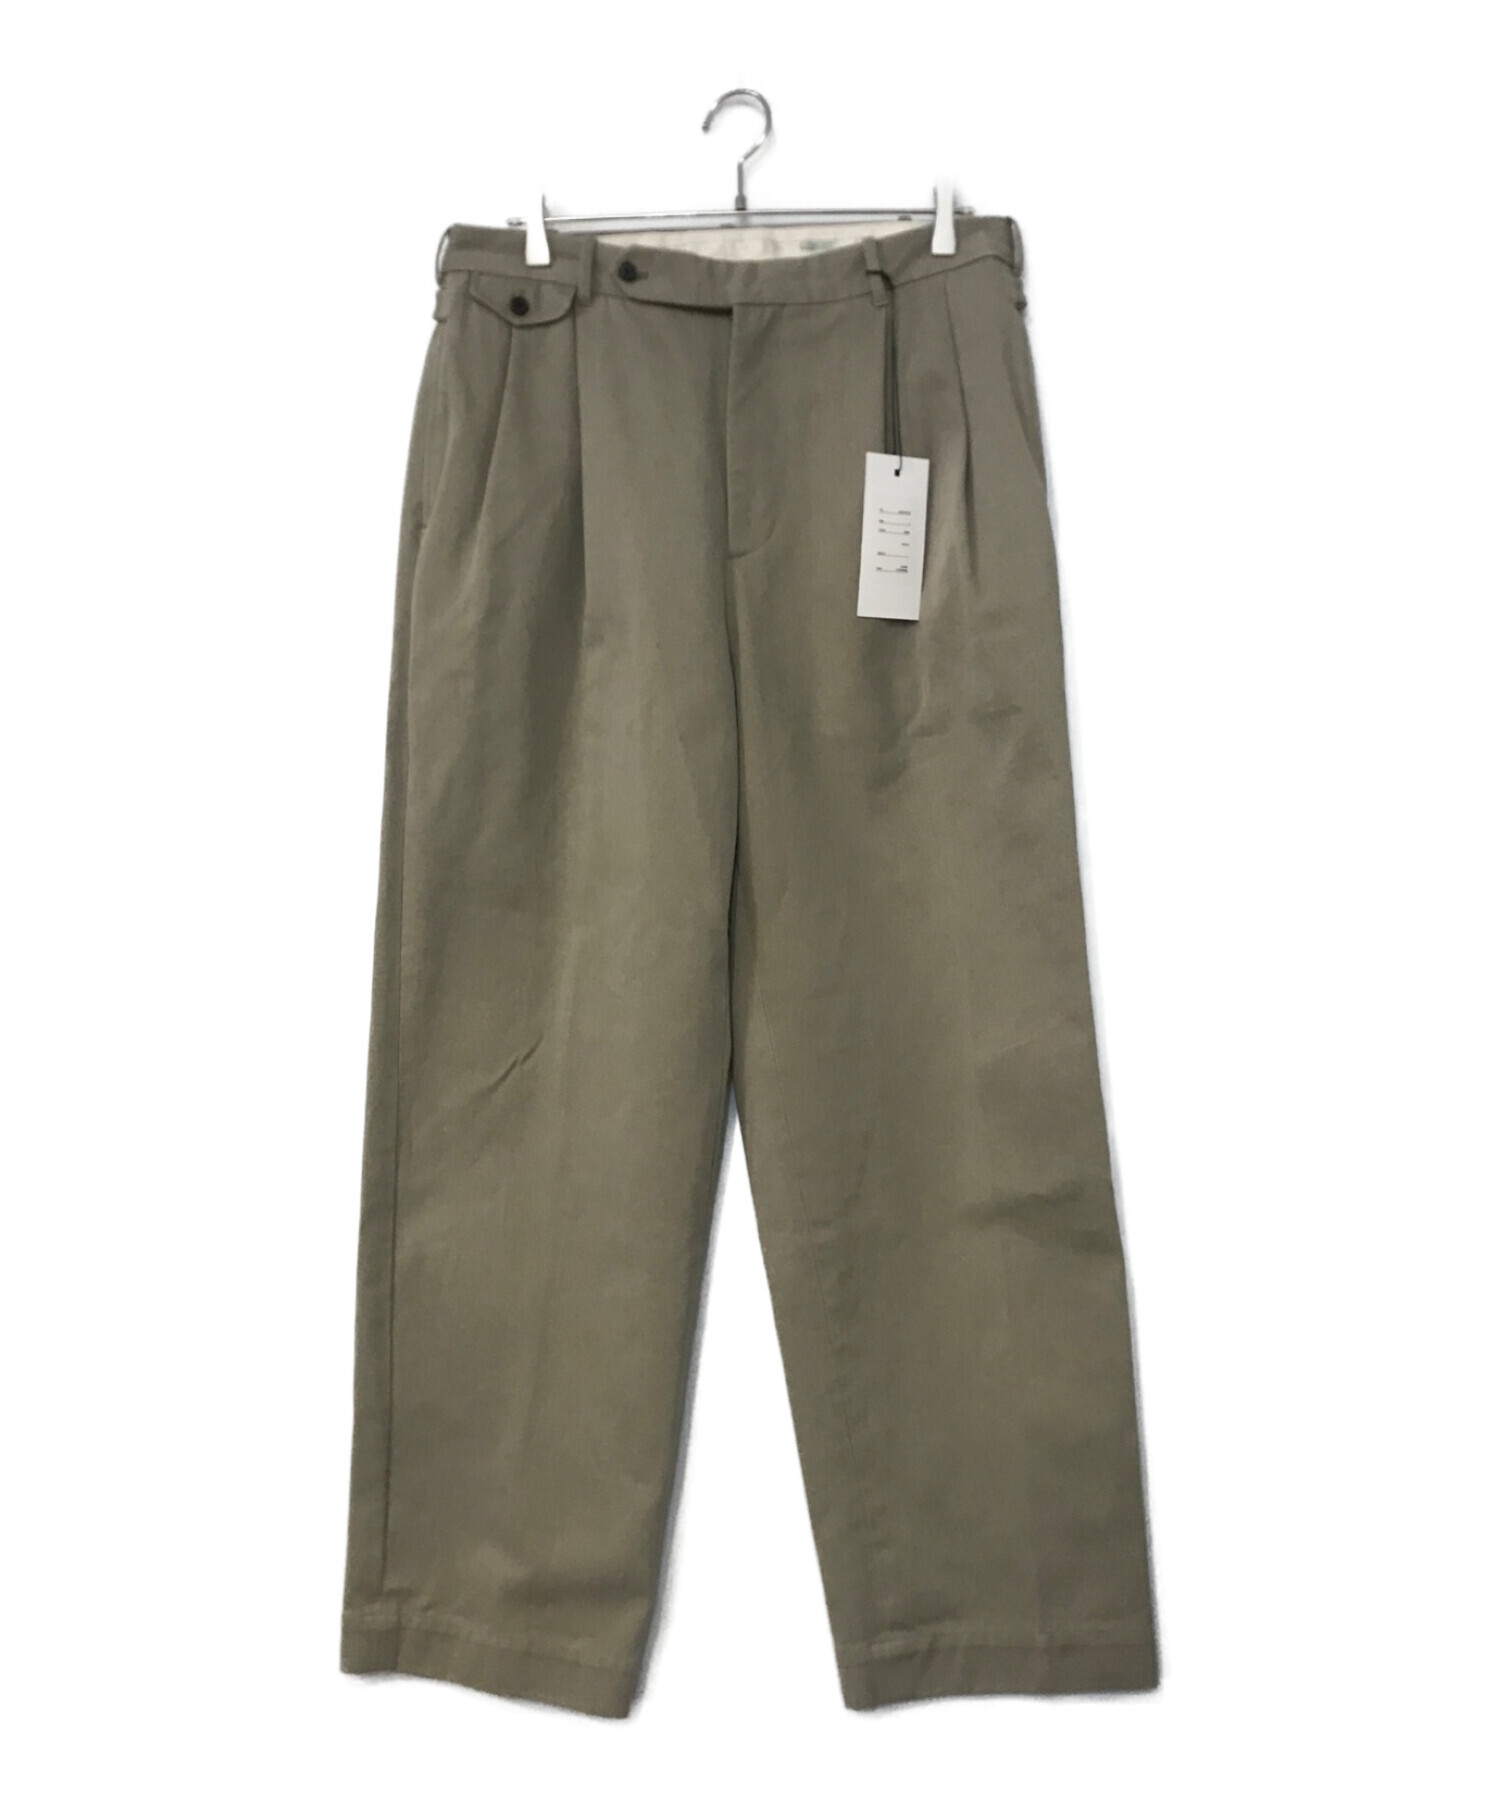 A.PRESSE (アプレッセ) Type.2 Chino Trousers ベージュ サイズ:3